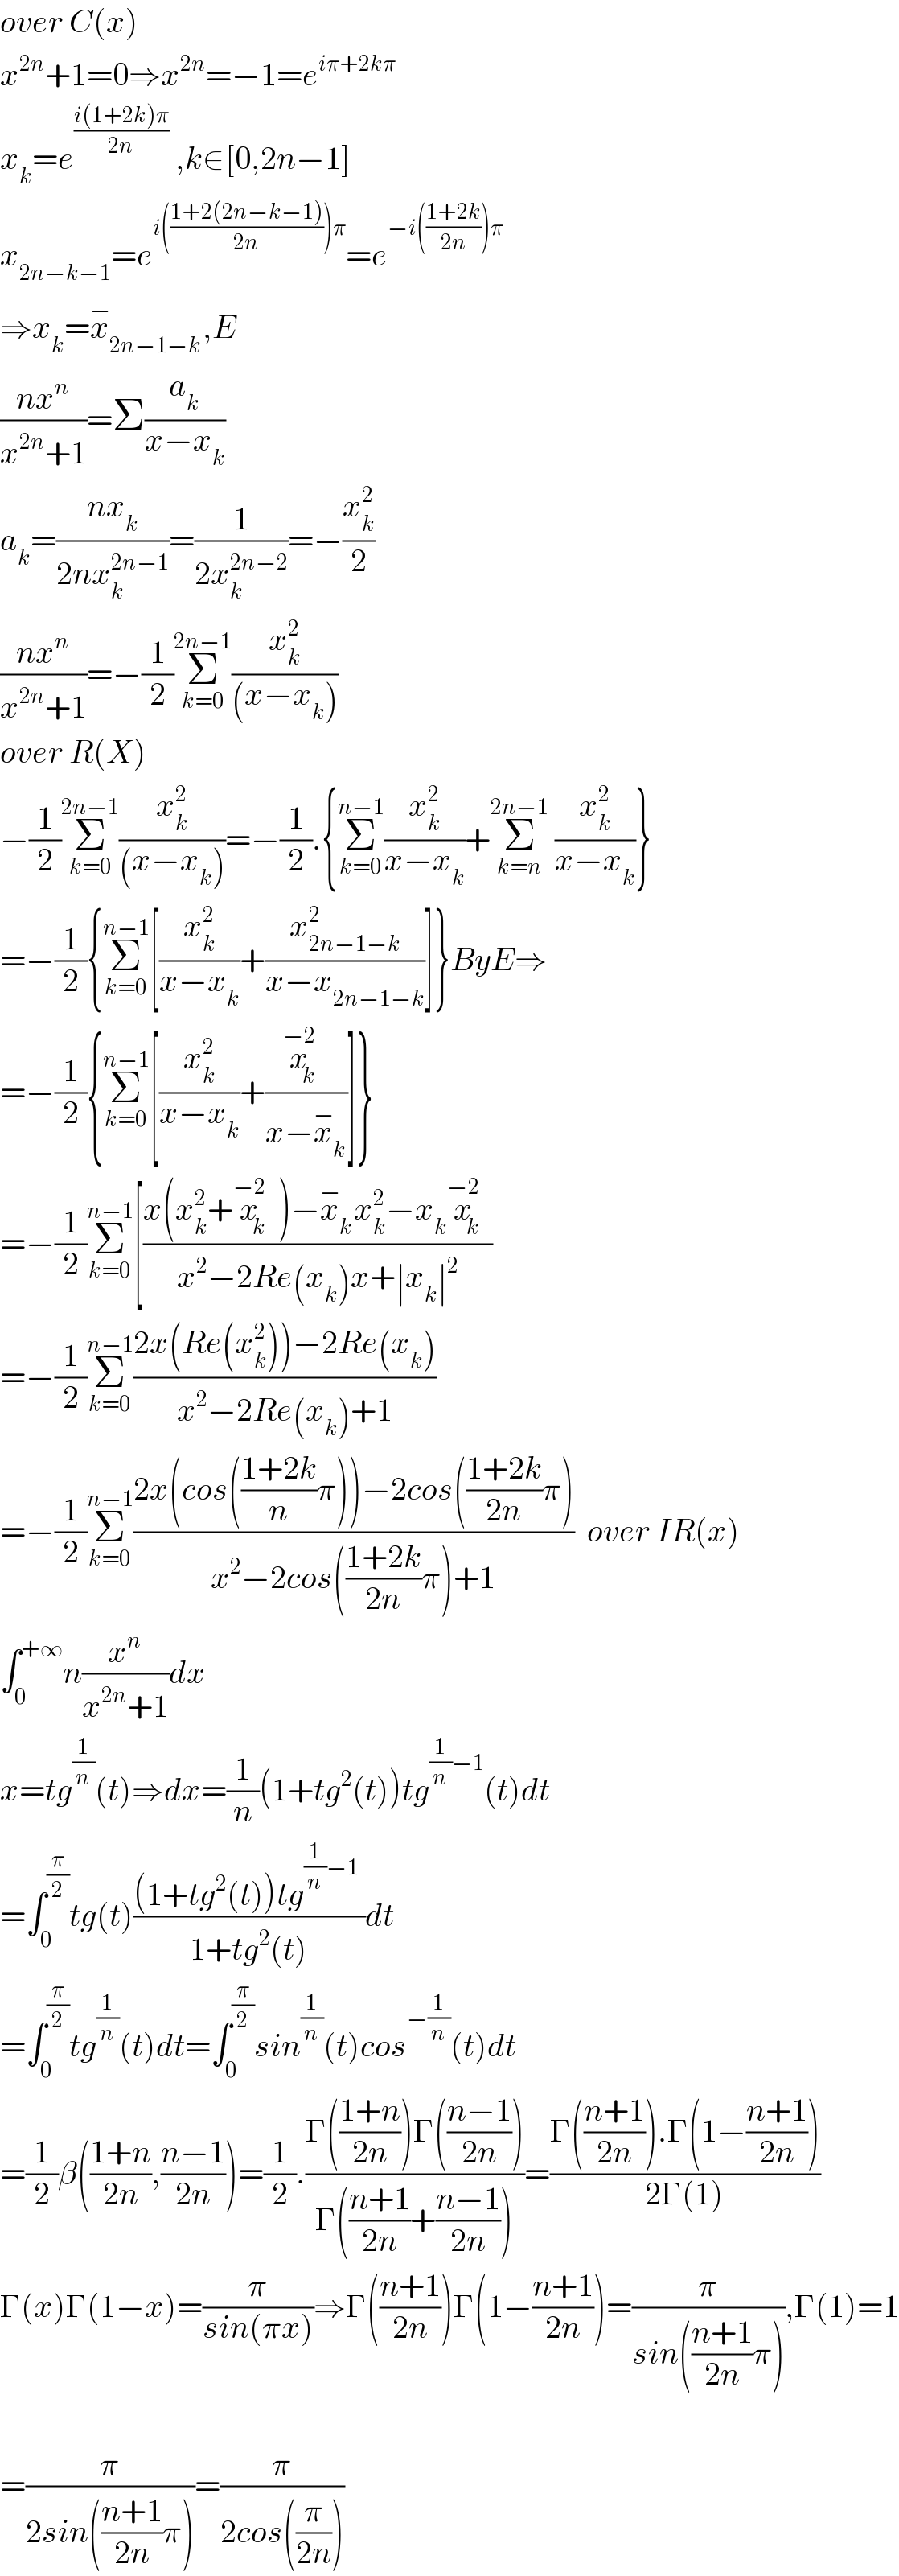 over C(x)  x^(2n) +1=0⇒x^(2n) =−1=e^(iπ+2kπ)   x_k =e^(((i(1+2k)π)/(2n))  ) ,k∈[0,2n−1]  x_(2n−k−1) =e^(i(((1+2(2n−k−1))/(2n)))π) =e^(−i(((1+2k)/(2n)))π)   ⇒x_k =x_(2n−1−k) ^− ,E  ((nx^n )/(x^(2n) +1))=Σ(a_k /(x−x_k ))  a_k =((nx_k )/(2nx_k ^(2n−1) ))=(1/(2x_k ^(2n−2) ))=−(x_k ^2 /2)  ((nx^n )/(x^(2n) +1))=−(1/2)Σ_(k=0) ^(2n−1) (x_k ^2 /((x−x_k )))  over R(X)  −(1/2)Σ_(k=0) ^(2n−1) (x_k ^2 /((x−x_k )))=−(1/2).{Σ_(k=0) ^(n−1) (x_k ^2 /(x−x_k ))+Σ_(k=n) ^(2n−1)  (x_k ^2 /(x−x_k ))}  =−(1/2){Σ_(k=0) ^(n−1) [(x_k ^2 /(x−x_k ))+(x_(2n−1−k) ^2 /(x−x_(2n−1−k) ))]}ByE⇒  =−(1/2){Σ_(k=0) ^(n−1) [(x_k ^2 /(x−x_k ))+(x_k ^(−2) /(x−x_k ^− ))]}  =−(1/2)Σ_(k=0) ^(n−1) [((x(x_k ^2 +x_k ^(−2) )−x_k ^− x_k ^2 −x_k x_k ^(−2) )/(x^2 −2Re(x_k )x+∣x_k ∣^2 ))  =−(1/2)Σ_(k=0) ^(n−1) ((2x(Re(x_k ^2 ))−2Re(x_k ))/(x^2 −2Re(x_k )+1))  =−(1/2)Σ_(k=0) ^(n−1) ((2x(cos(((1+2k)/n)π))−2cos(((1+2k)/(2n))π))/(x^2 −2cos(((1+2k)/(2n))π)+1))  over IR(x)  ∫_0 ^(+∞) n(x^n /(x^(2n) +1))dx  x=tg^(1/n) (t)⇒dx=(1/n)(1+tg^2 (t))tg^((1/n)−1) (t)dt  =∫_0 ^(π/2) tg(t)(((1+tg^2 (t))tg^((1/n)−1)  )/(1+tg^2 (t)))dt  =∫_0 ^(π/2) tg^(1/n) (t)dt=∫_0 ^(π/2) sin^(1/n) (t)cos^(−(1/n)) (t)dt  =(1/2)β(((1+n)/(2n)),((n−1)/(2n)))=(1/2).((Γ(((1+n)/(2n)))Γ(((n−1)/(2n))))/(Γ(((n+1)/(2n))+((n−1)/(2n)))))=((Γ(((n+1)/(2n))).Γ(1−((n+1)/(2n))))/(2Γ(1)))  Γ(x)Γ(1−x)=(π/(sin(πx)))⇒Γ(((n+1)/(2n)))Γ(1−((n+1)/(2n)))=(π/(sin(((n+1)/(2n))π))),Γ(1)=1    =(π/(2sin(((n+1)/(2n))π)))=(π/(2cos((π/(2n)))))  